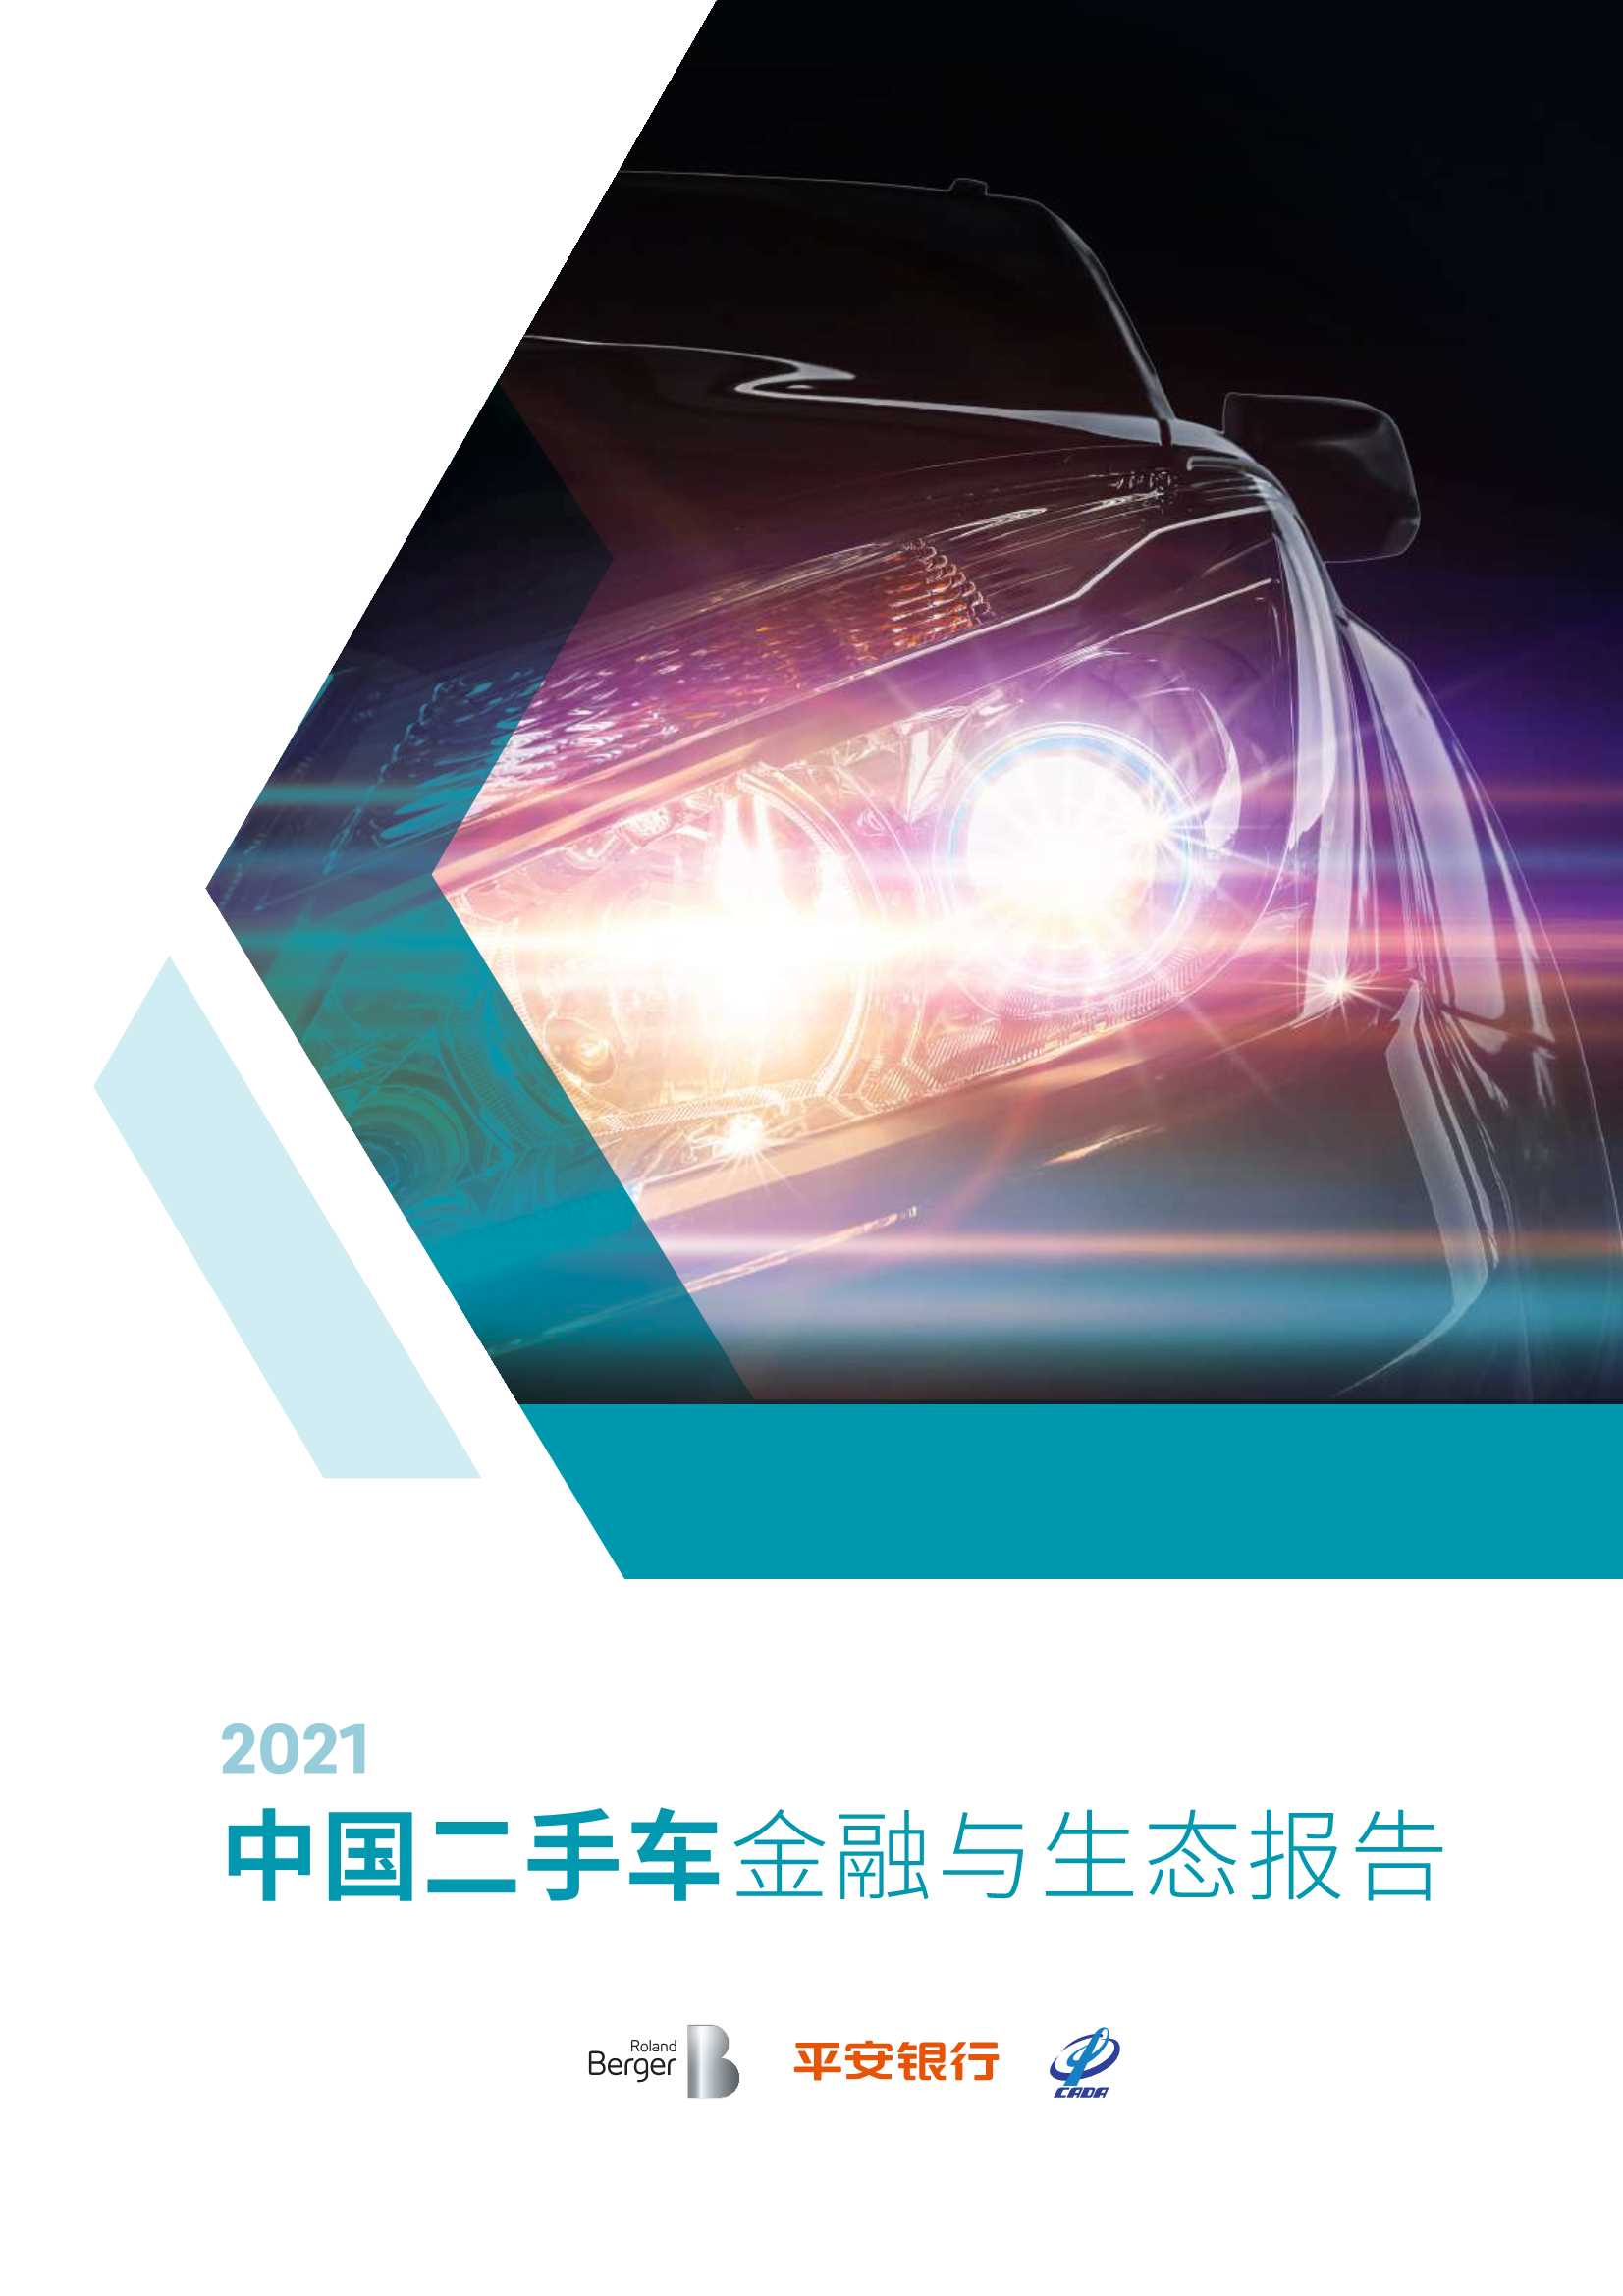 罗兰贝格&平安银行&中国汽车流通协会-2021中国二手车金融与生态报告-2021.09-50页